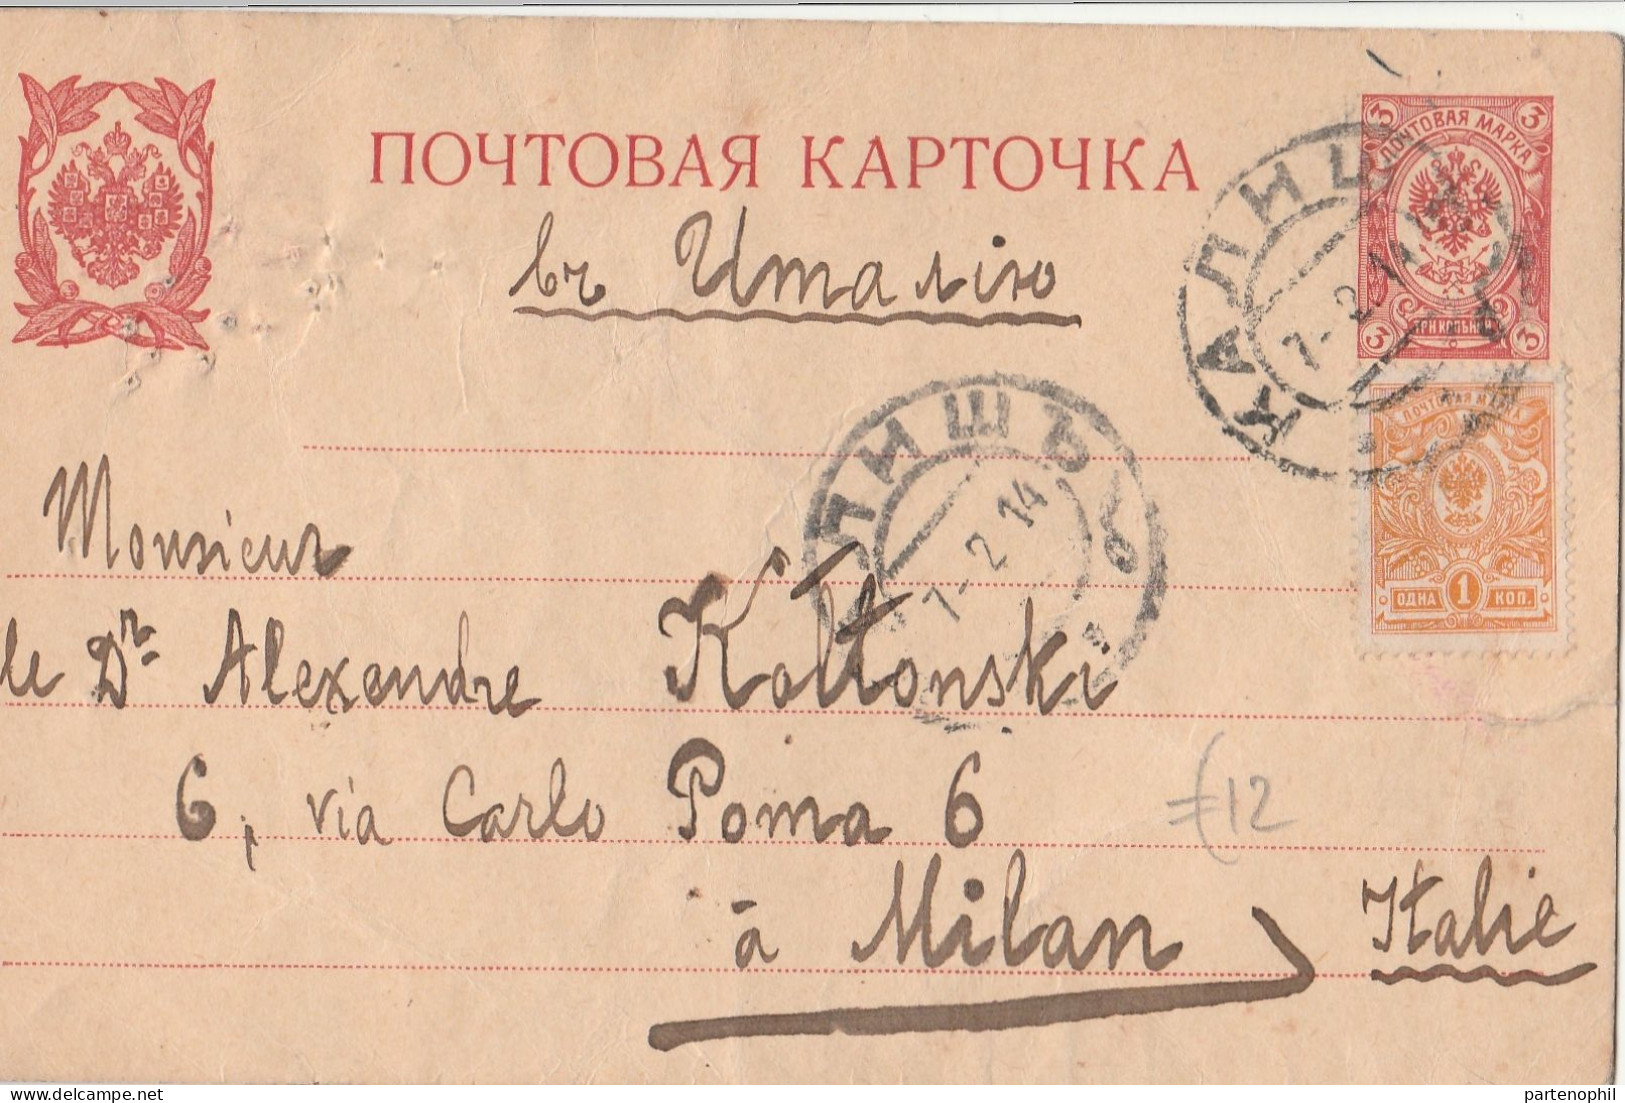 674 - Russia 1900/70 insieme di 69 interessanti affrancature tra lettere e cartoline con molte interessanti presenza da